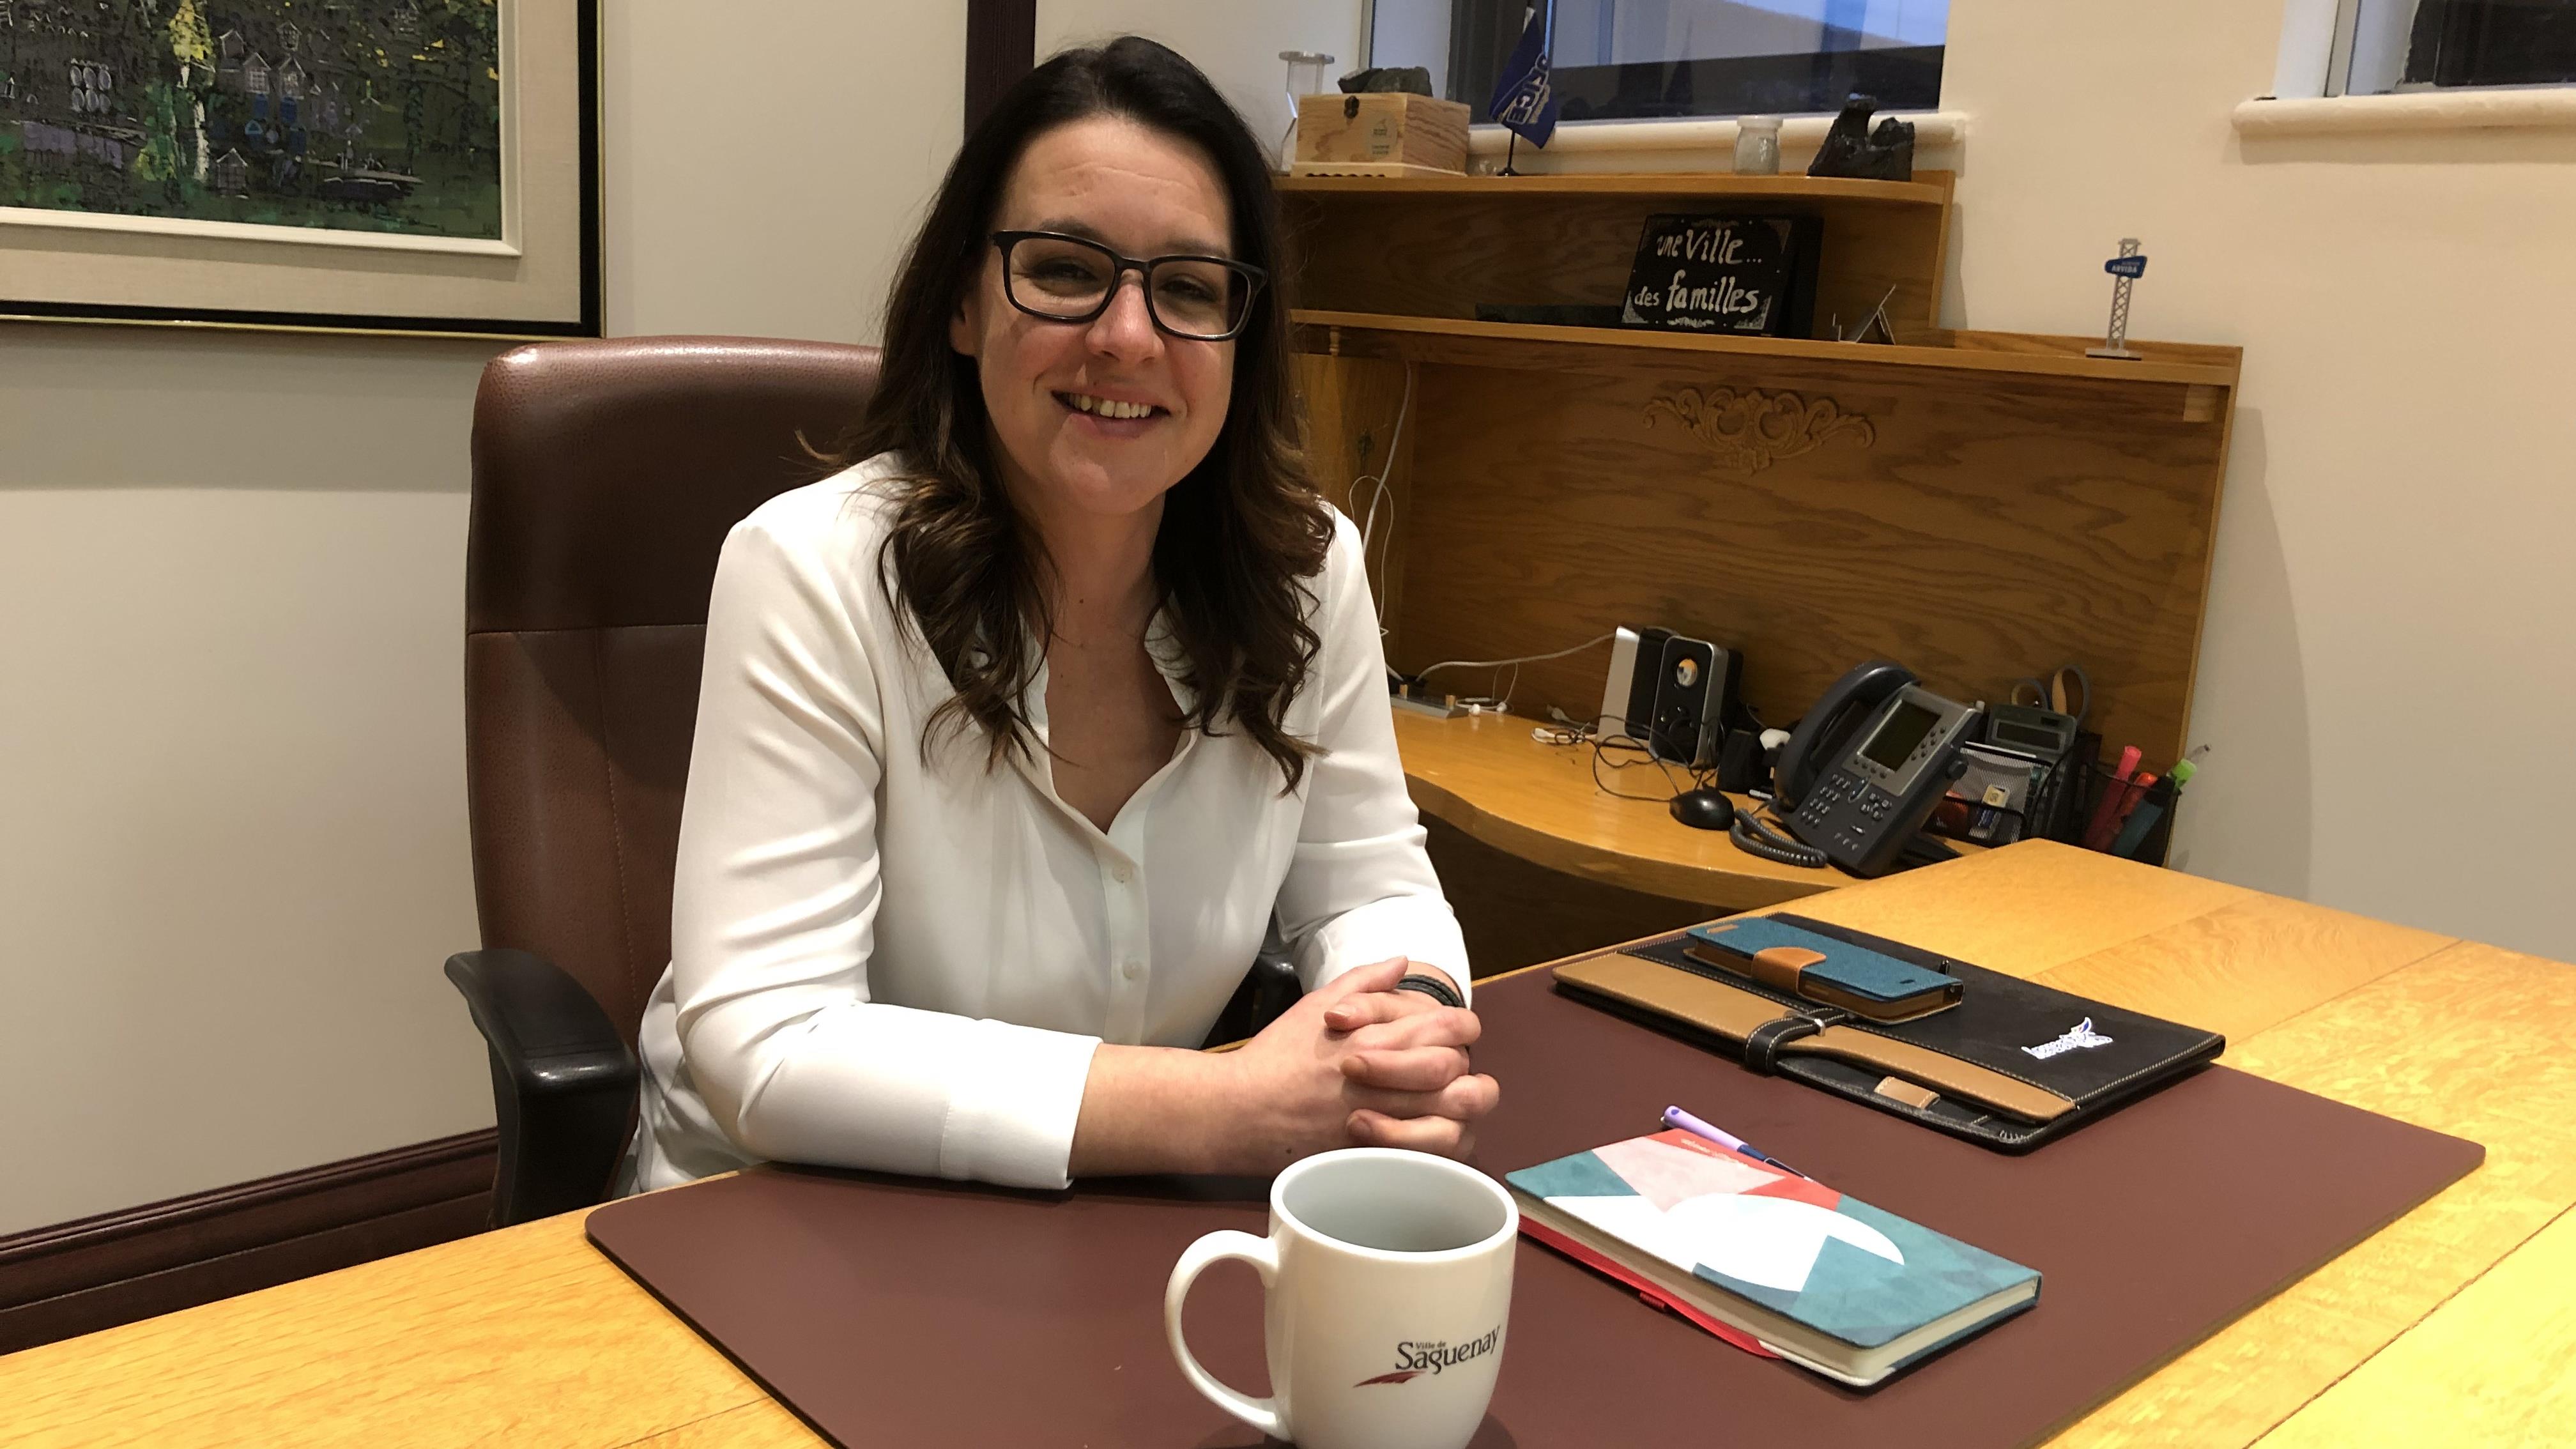 Un premier entretien avec la nouvelle mairesse de Saguenay, Julie Dufour
Un premier entretien avec la nouvelle mairesse de Saguenay, Julie Dufour